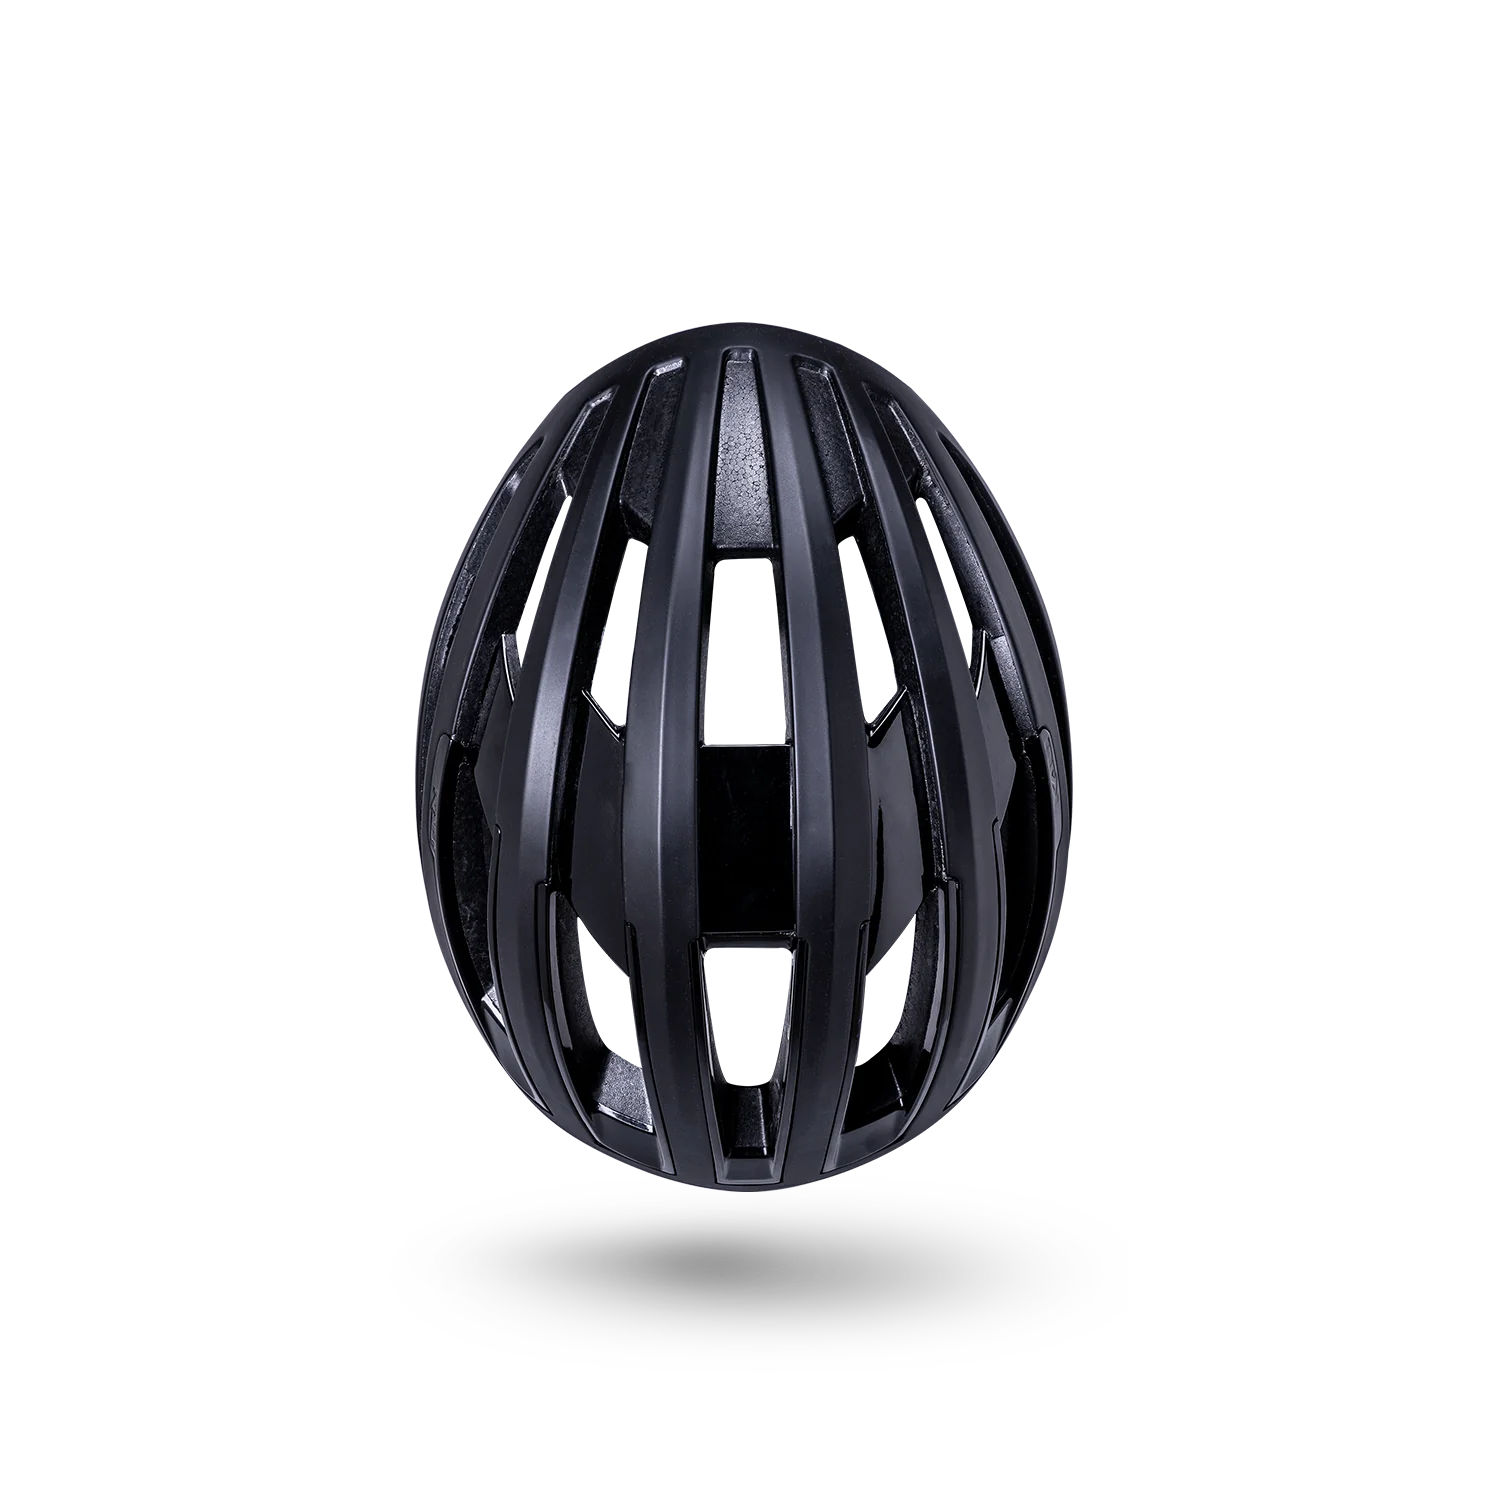 Kali Grit 1.0 Bicycle Helmet (3 Colors)